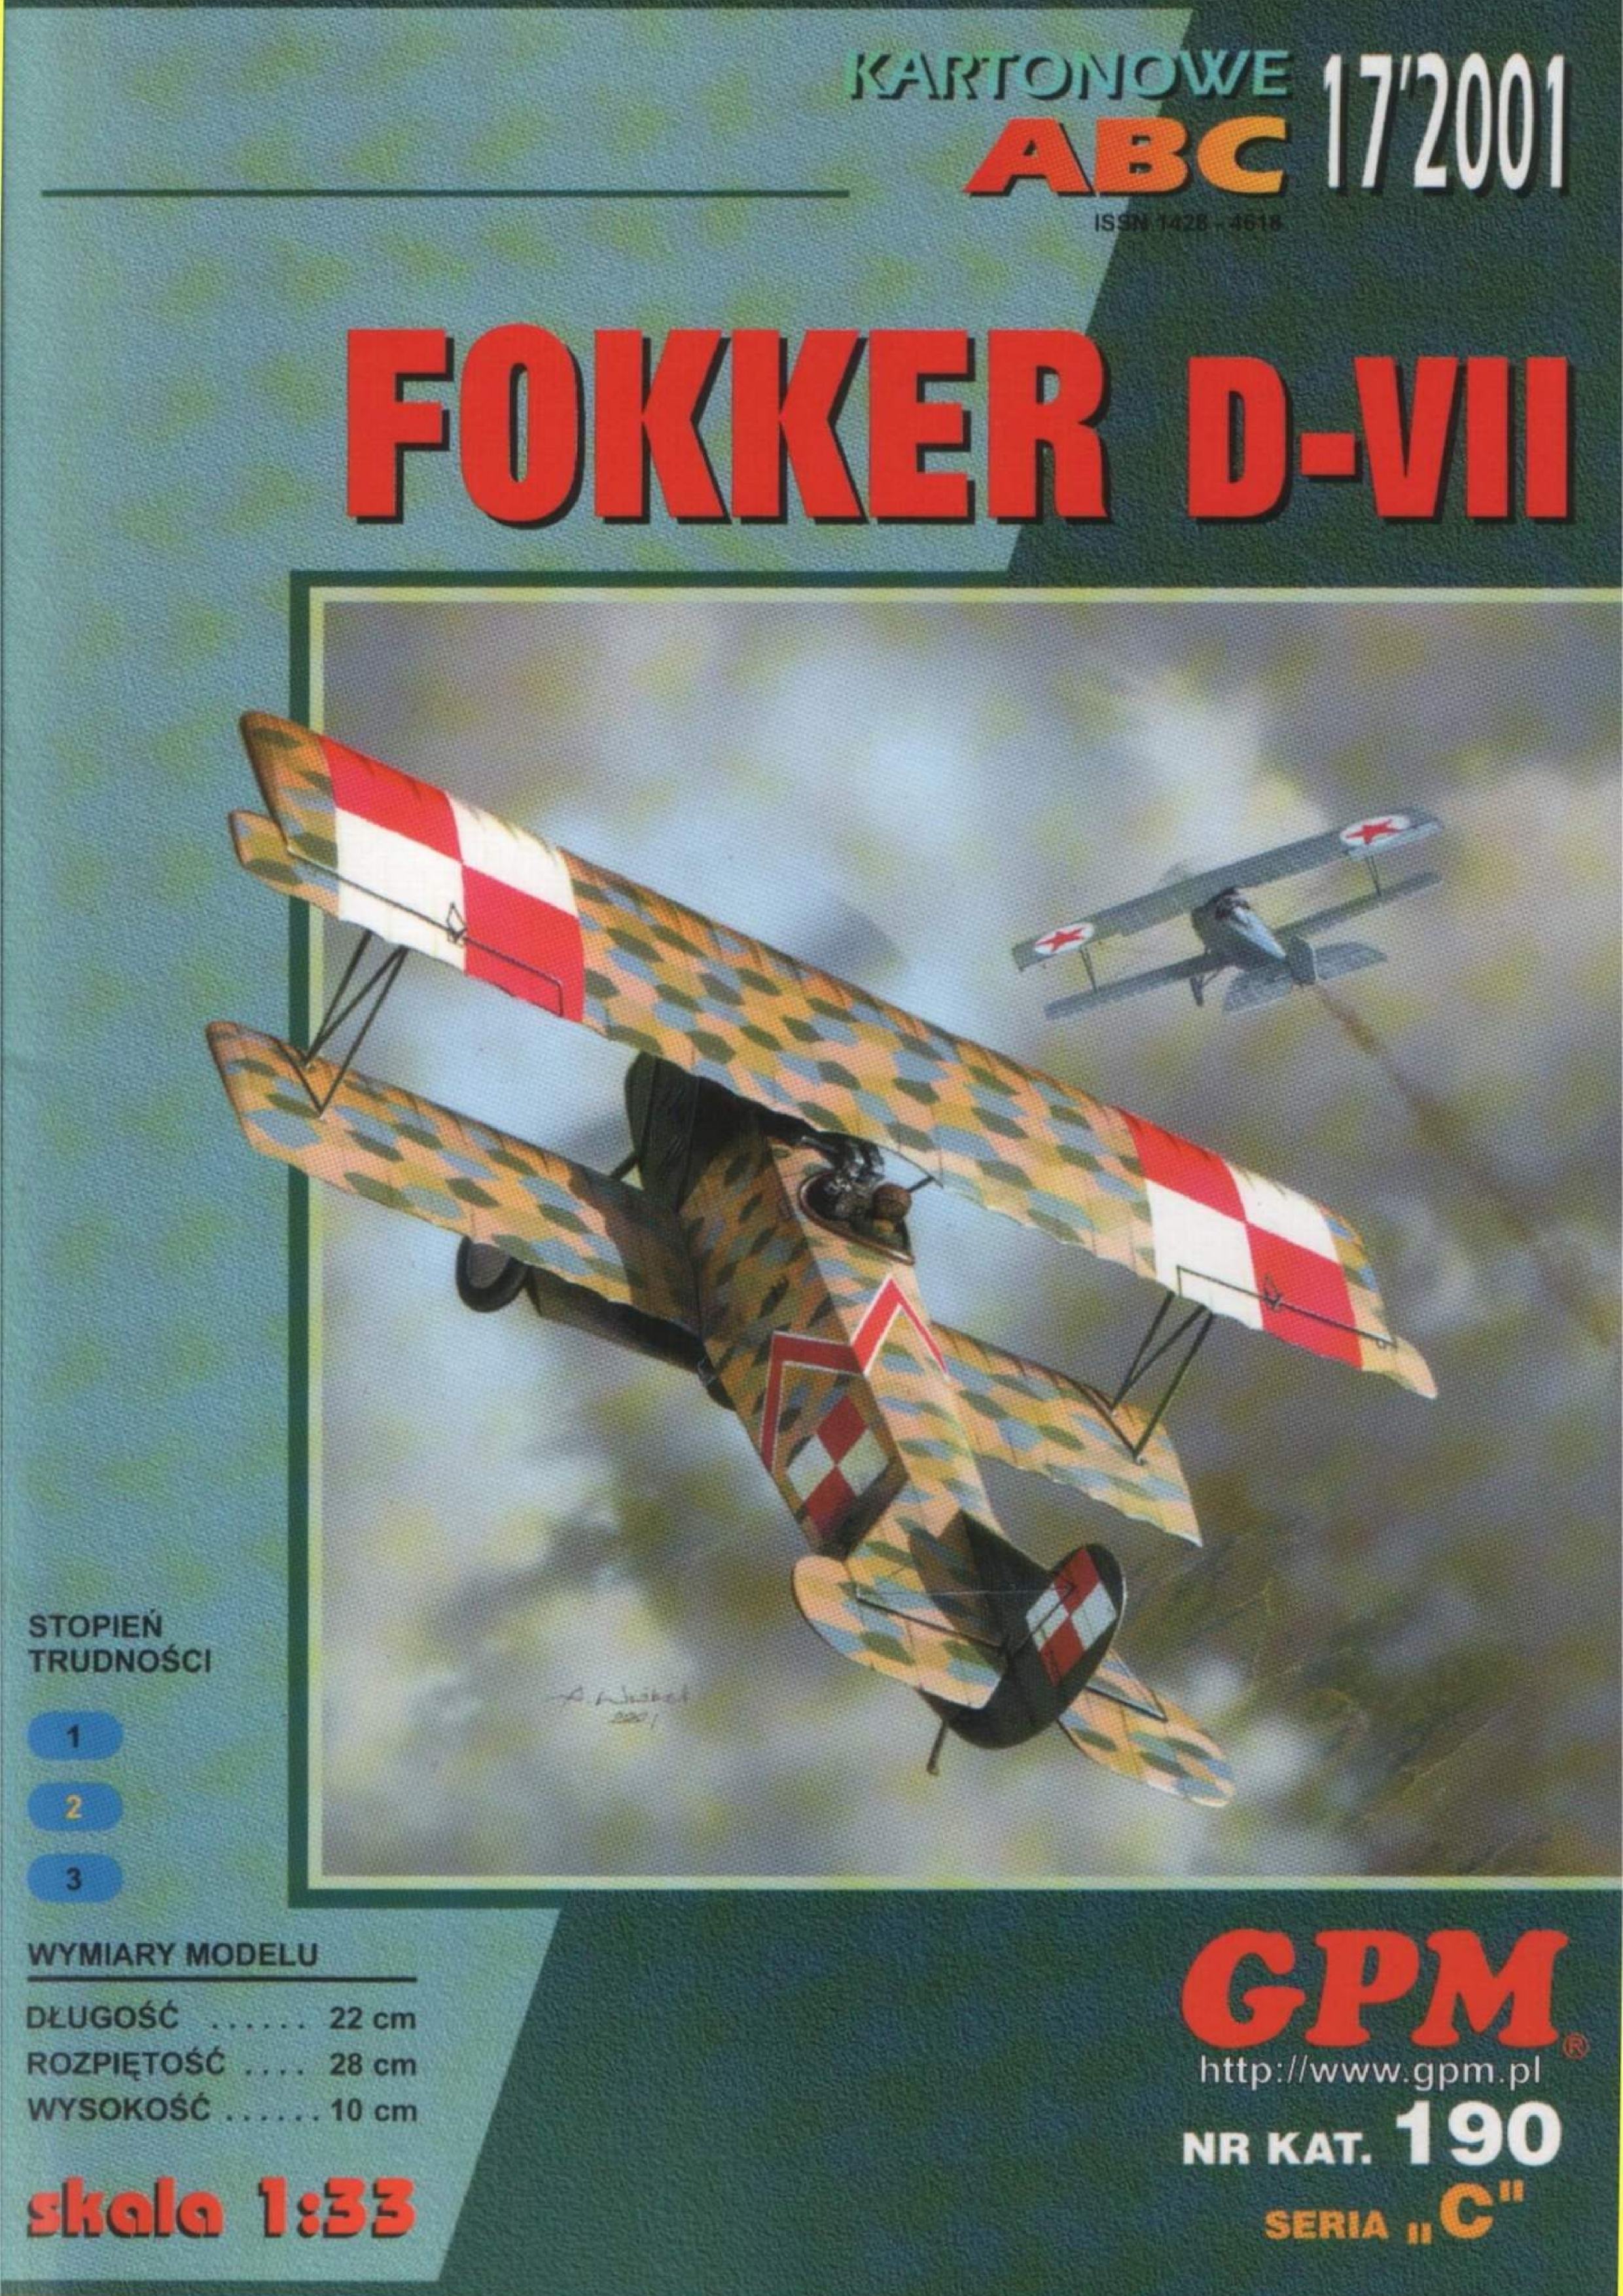 GPM 190 -  Fokker D.VII niemiecki samolot myśliwski z I wojny światowej - 01.jpg